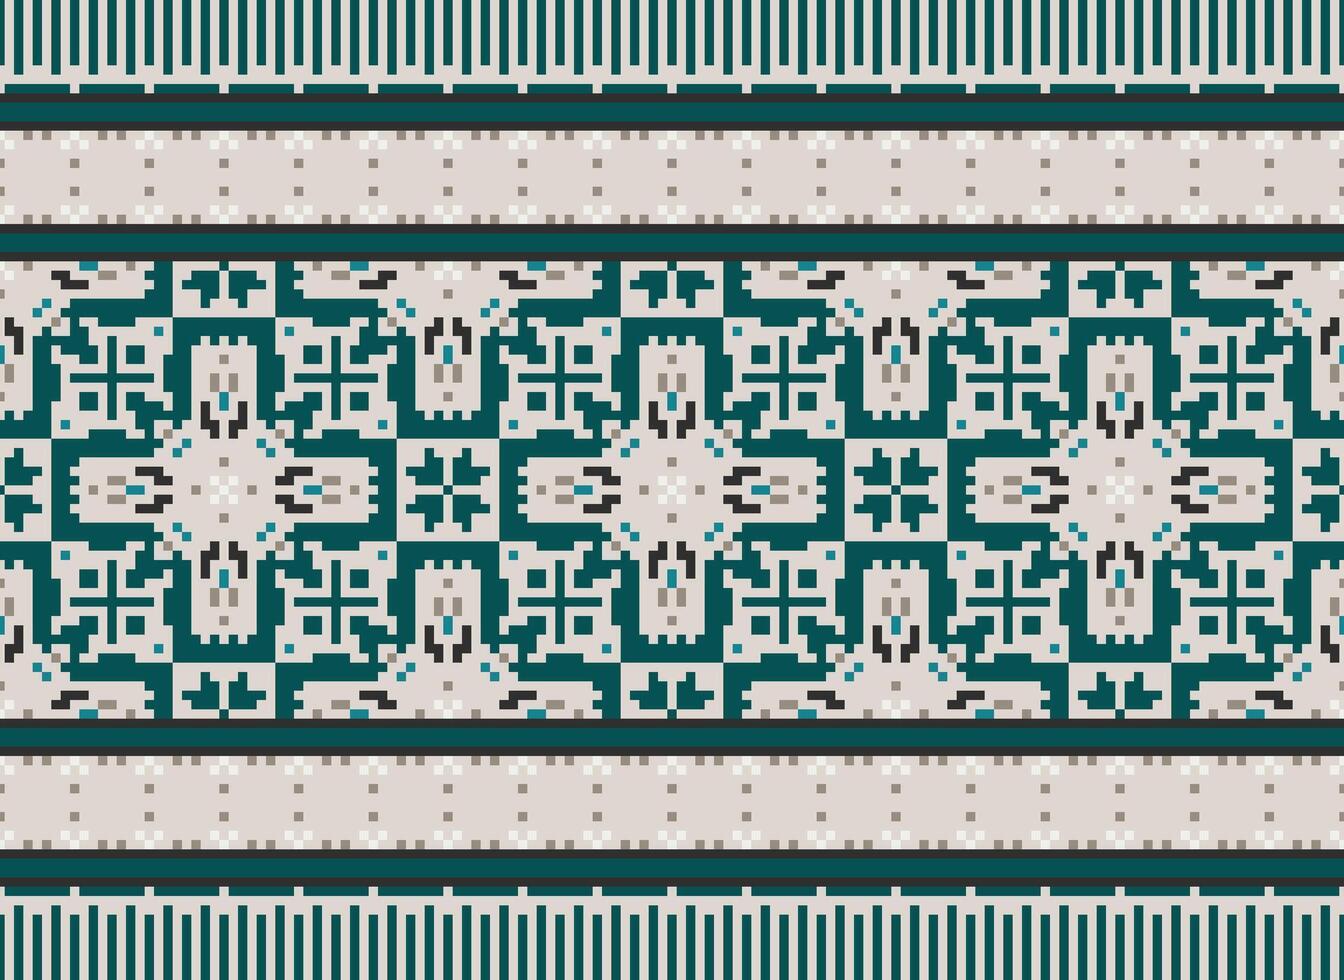 cruzar puntada. píxel geométrico étnico oriental sin costura modelo tradicional antecedentes. estilo azteca resumen vector ilustración. diseño para textil, cortina, alfombra, fondo de pantalla, ropa, envase